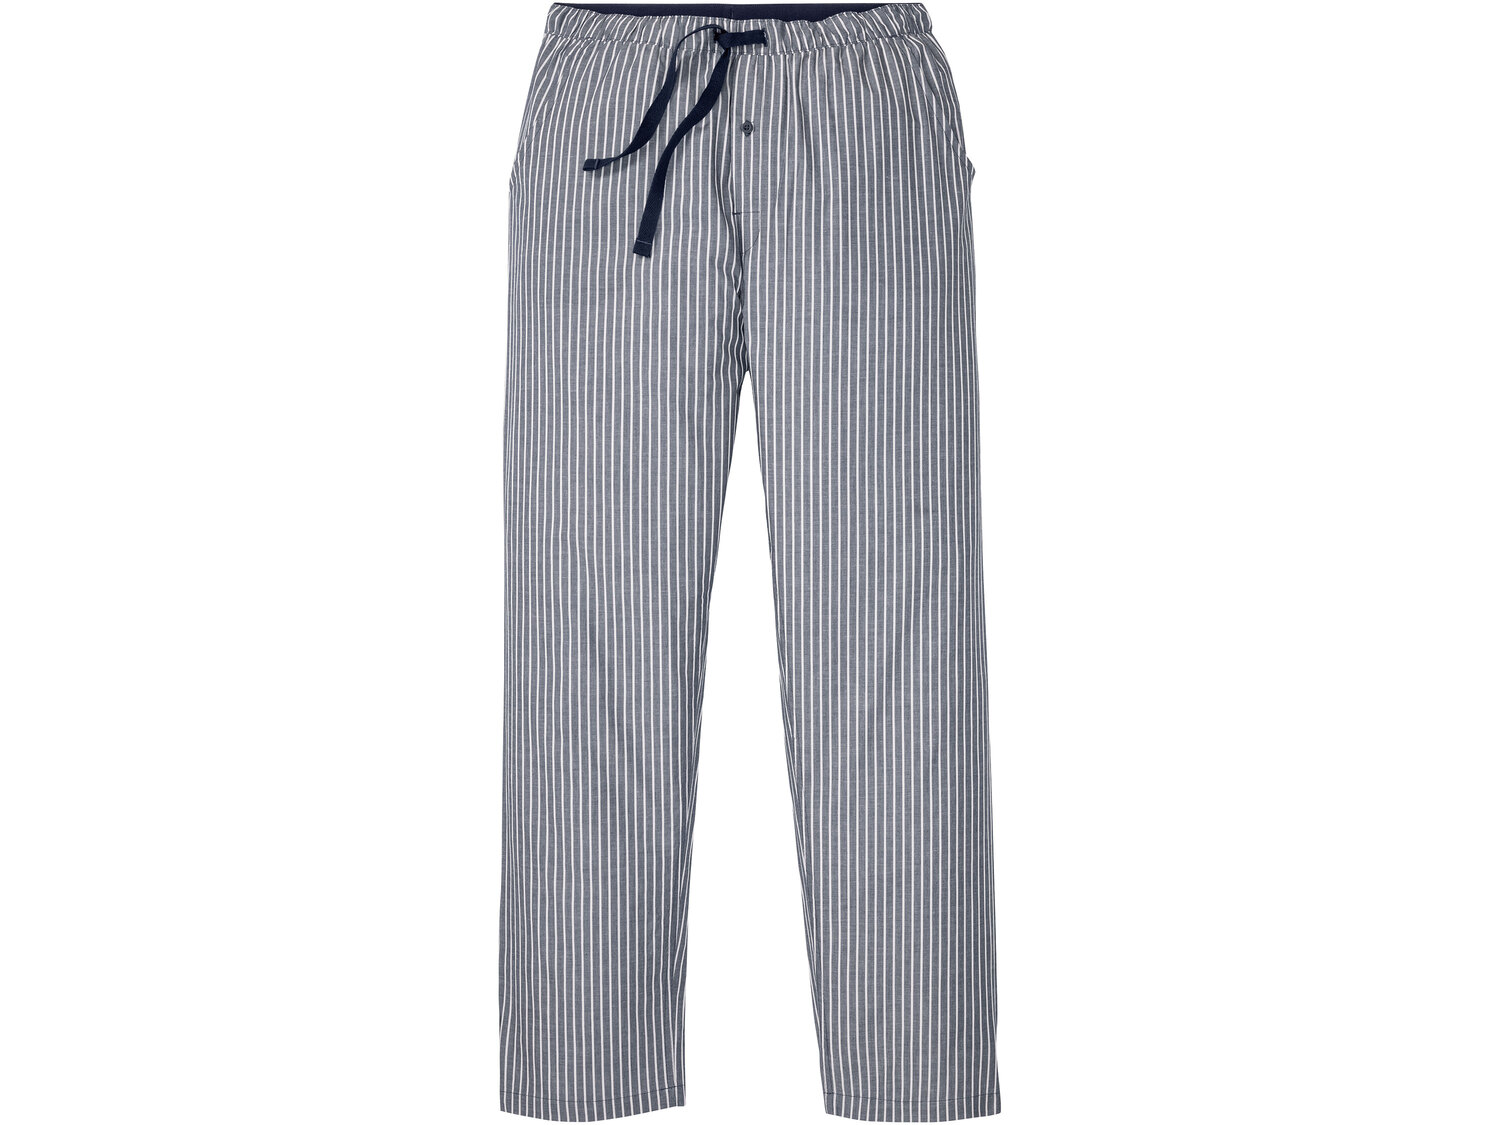 Piżama męska , cena 34,99 PLN 
- rozmiary: M-XL
- 100% bawełny
Dostępne rozmiary

Opis

- ...